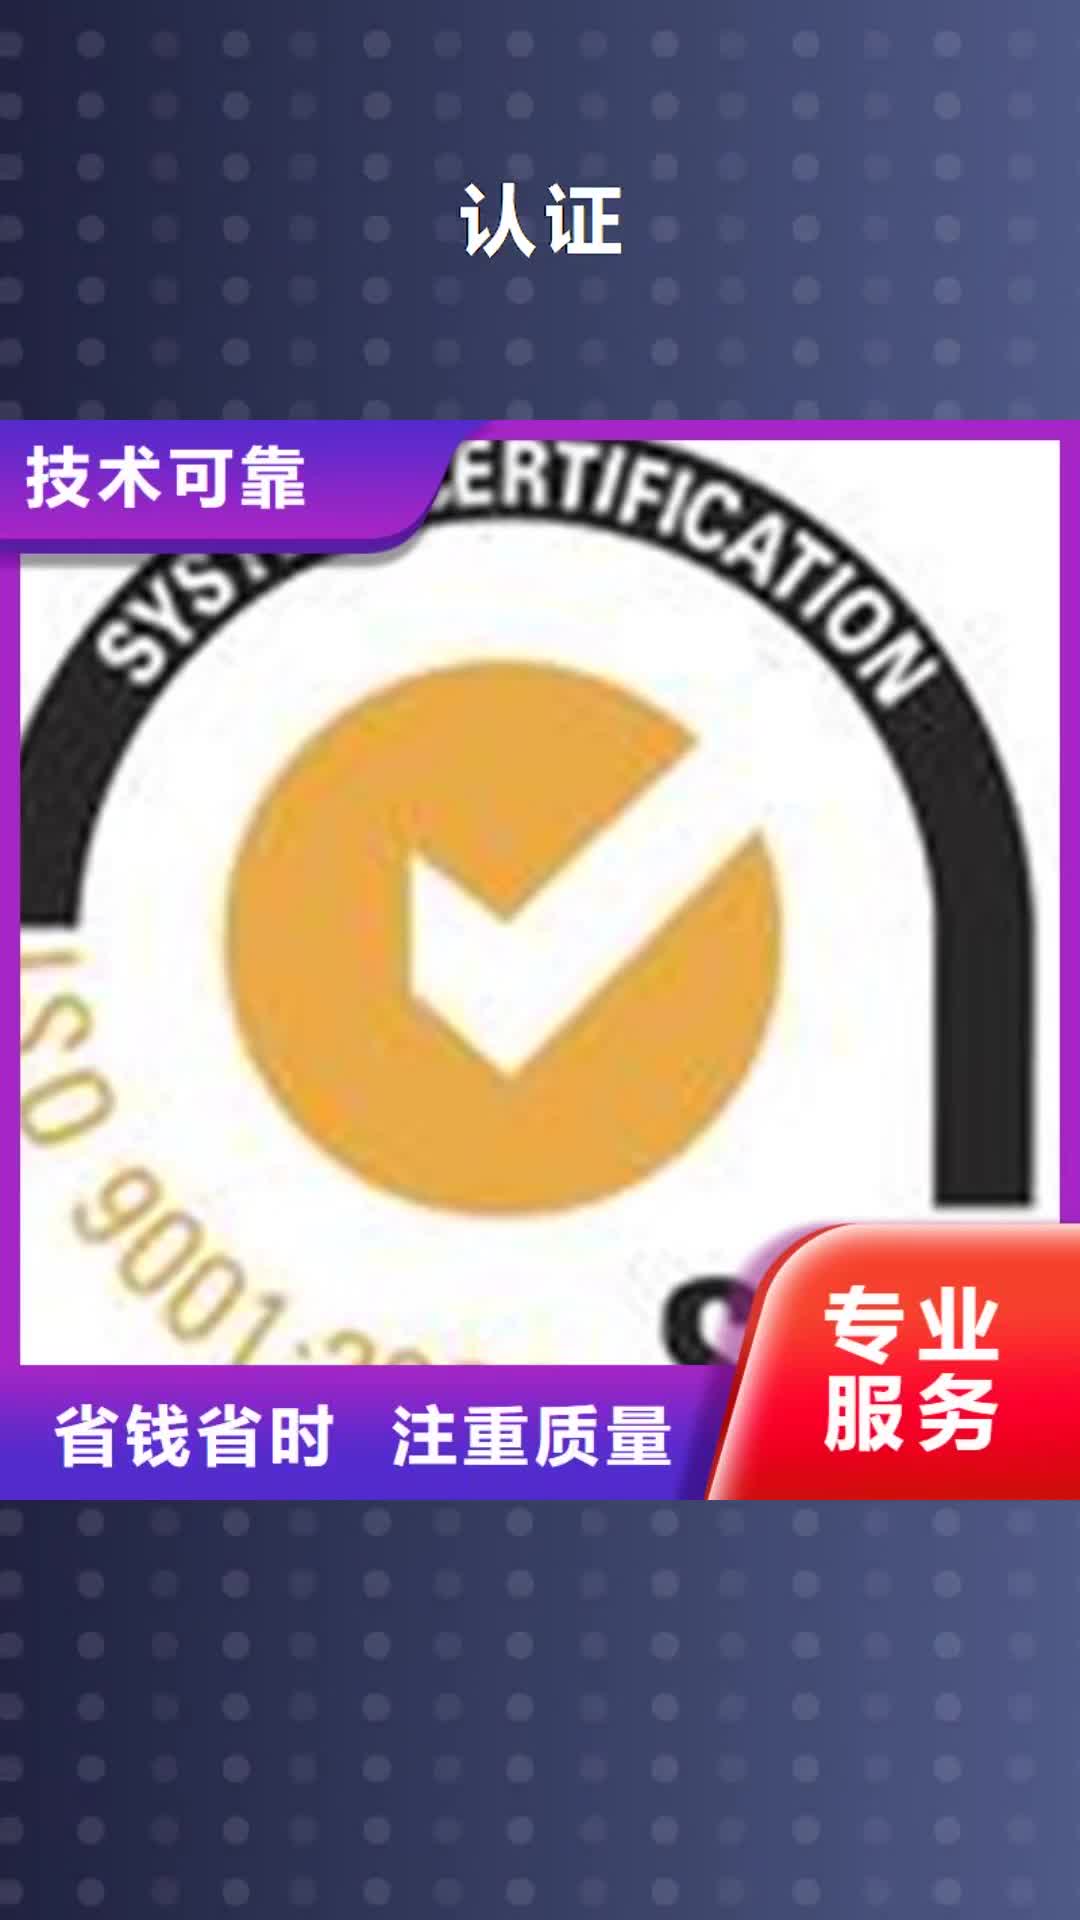 丽水 认证,【IATF16949认证】专业服务